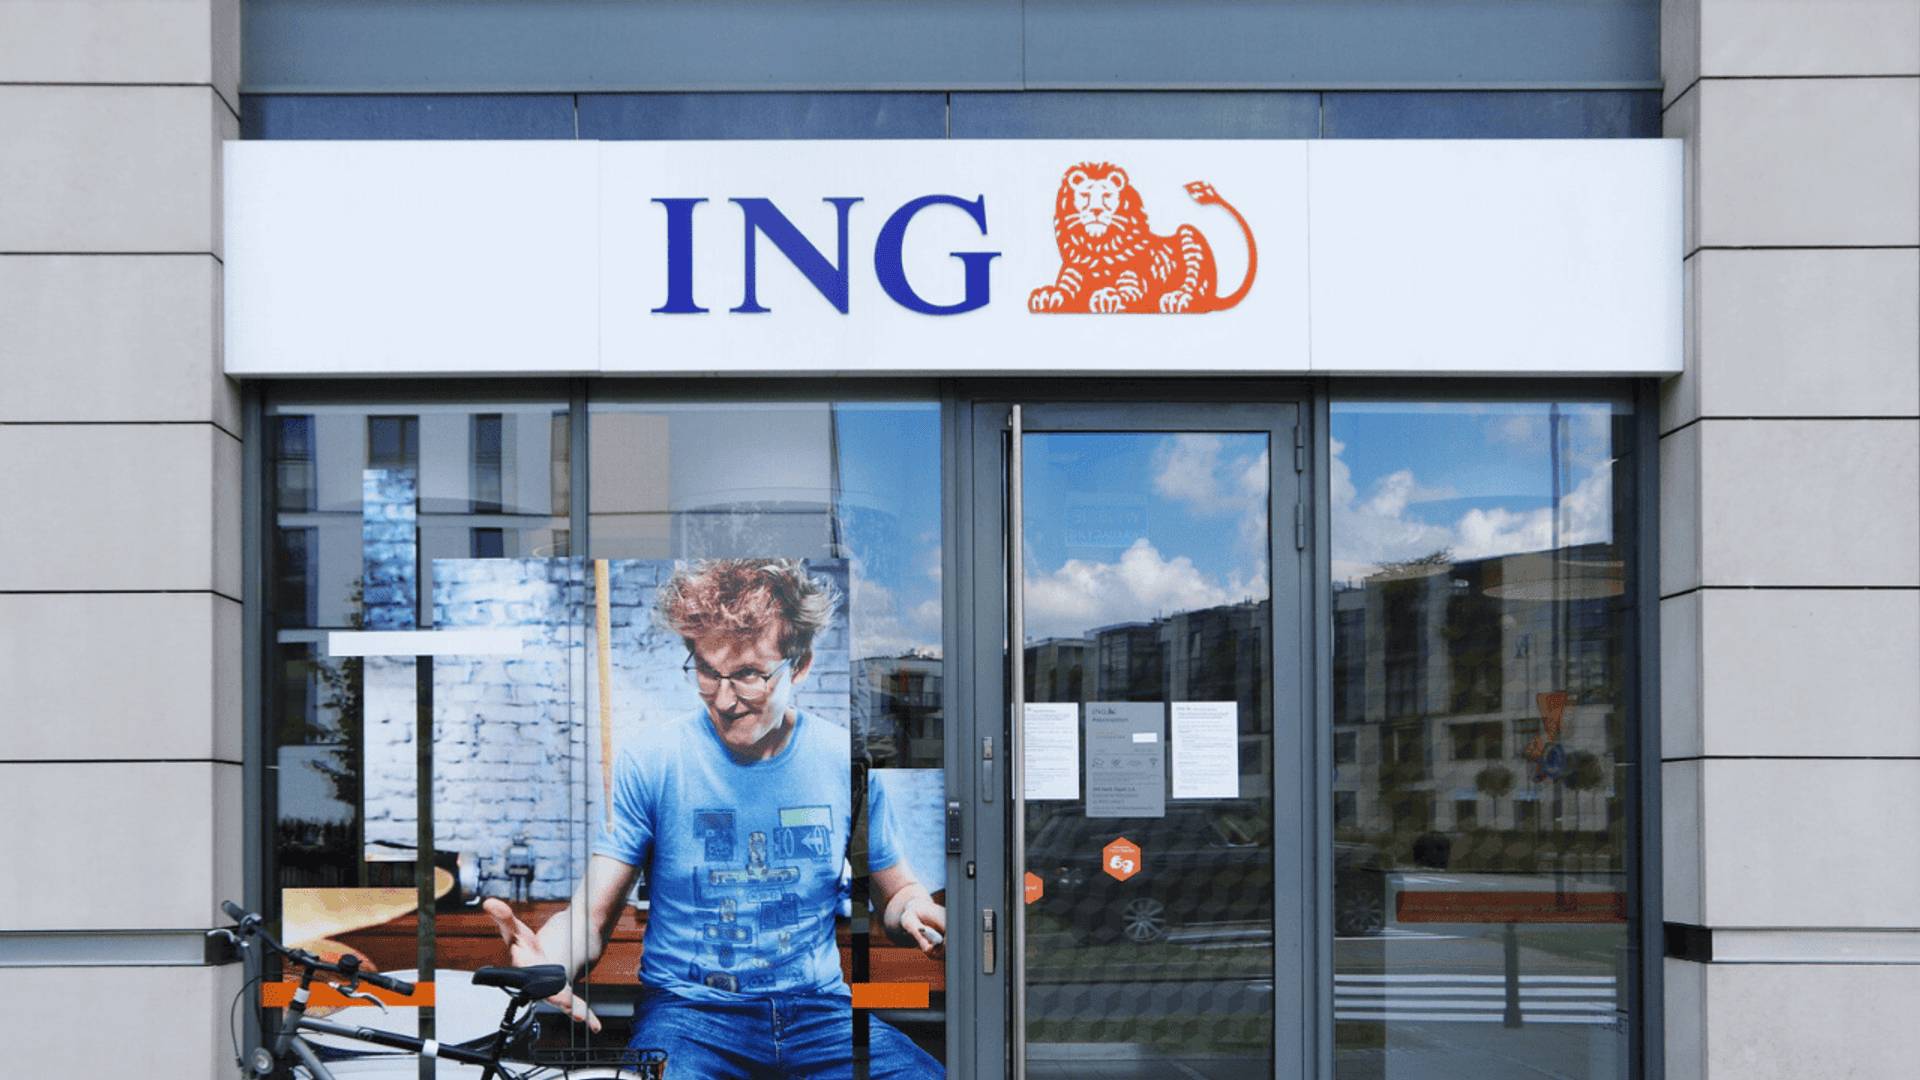 ING Bank Śląski